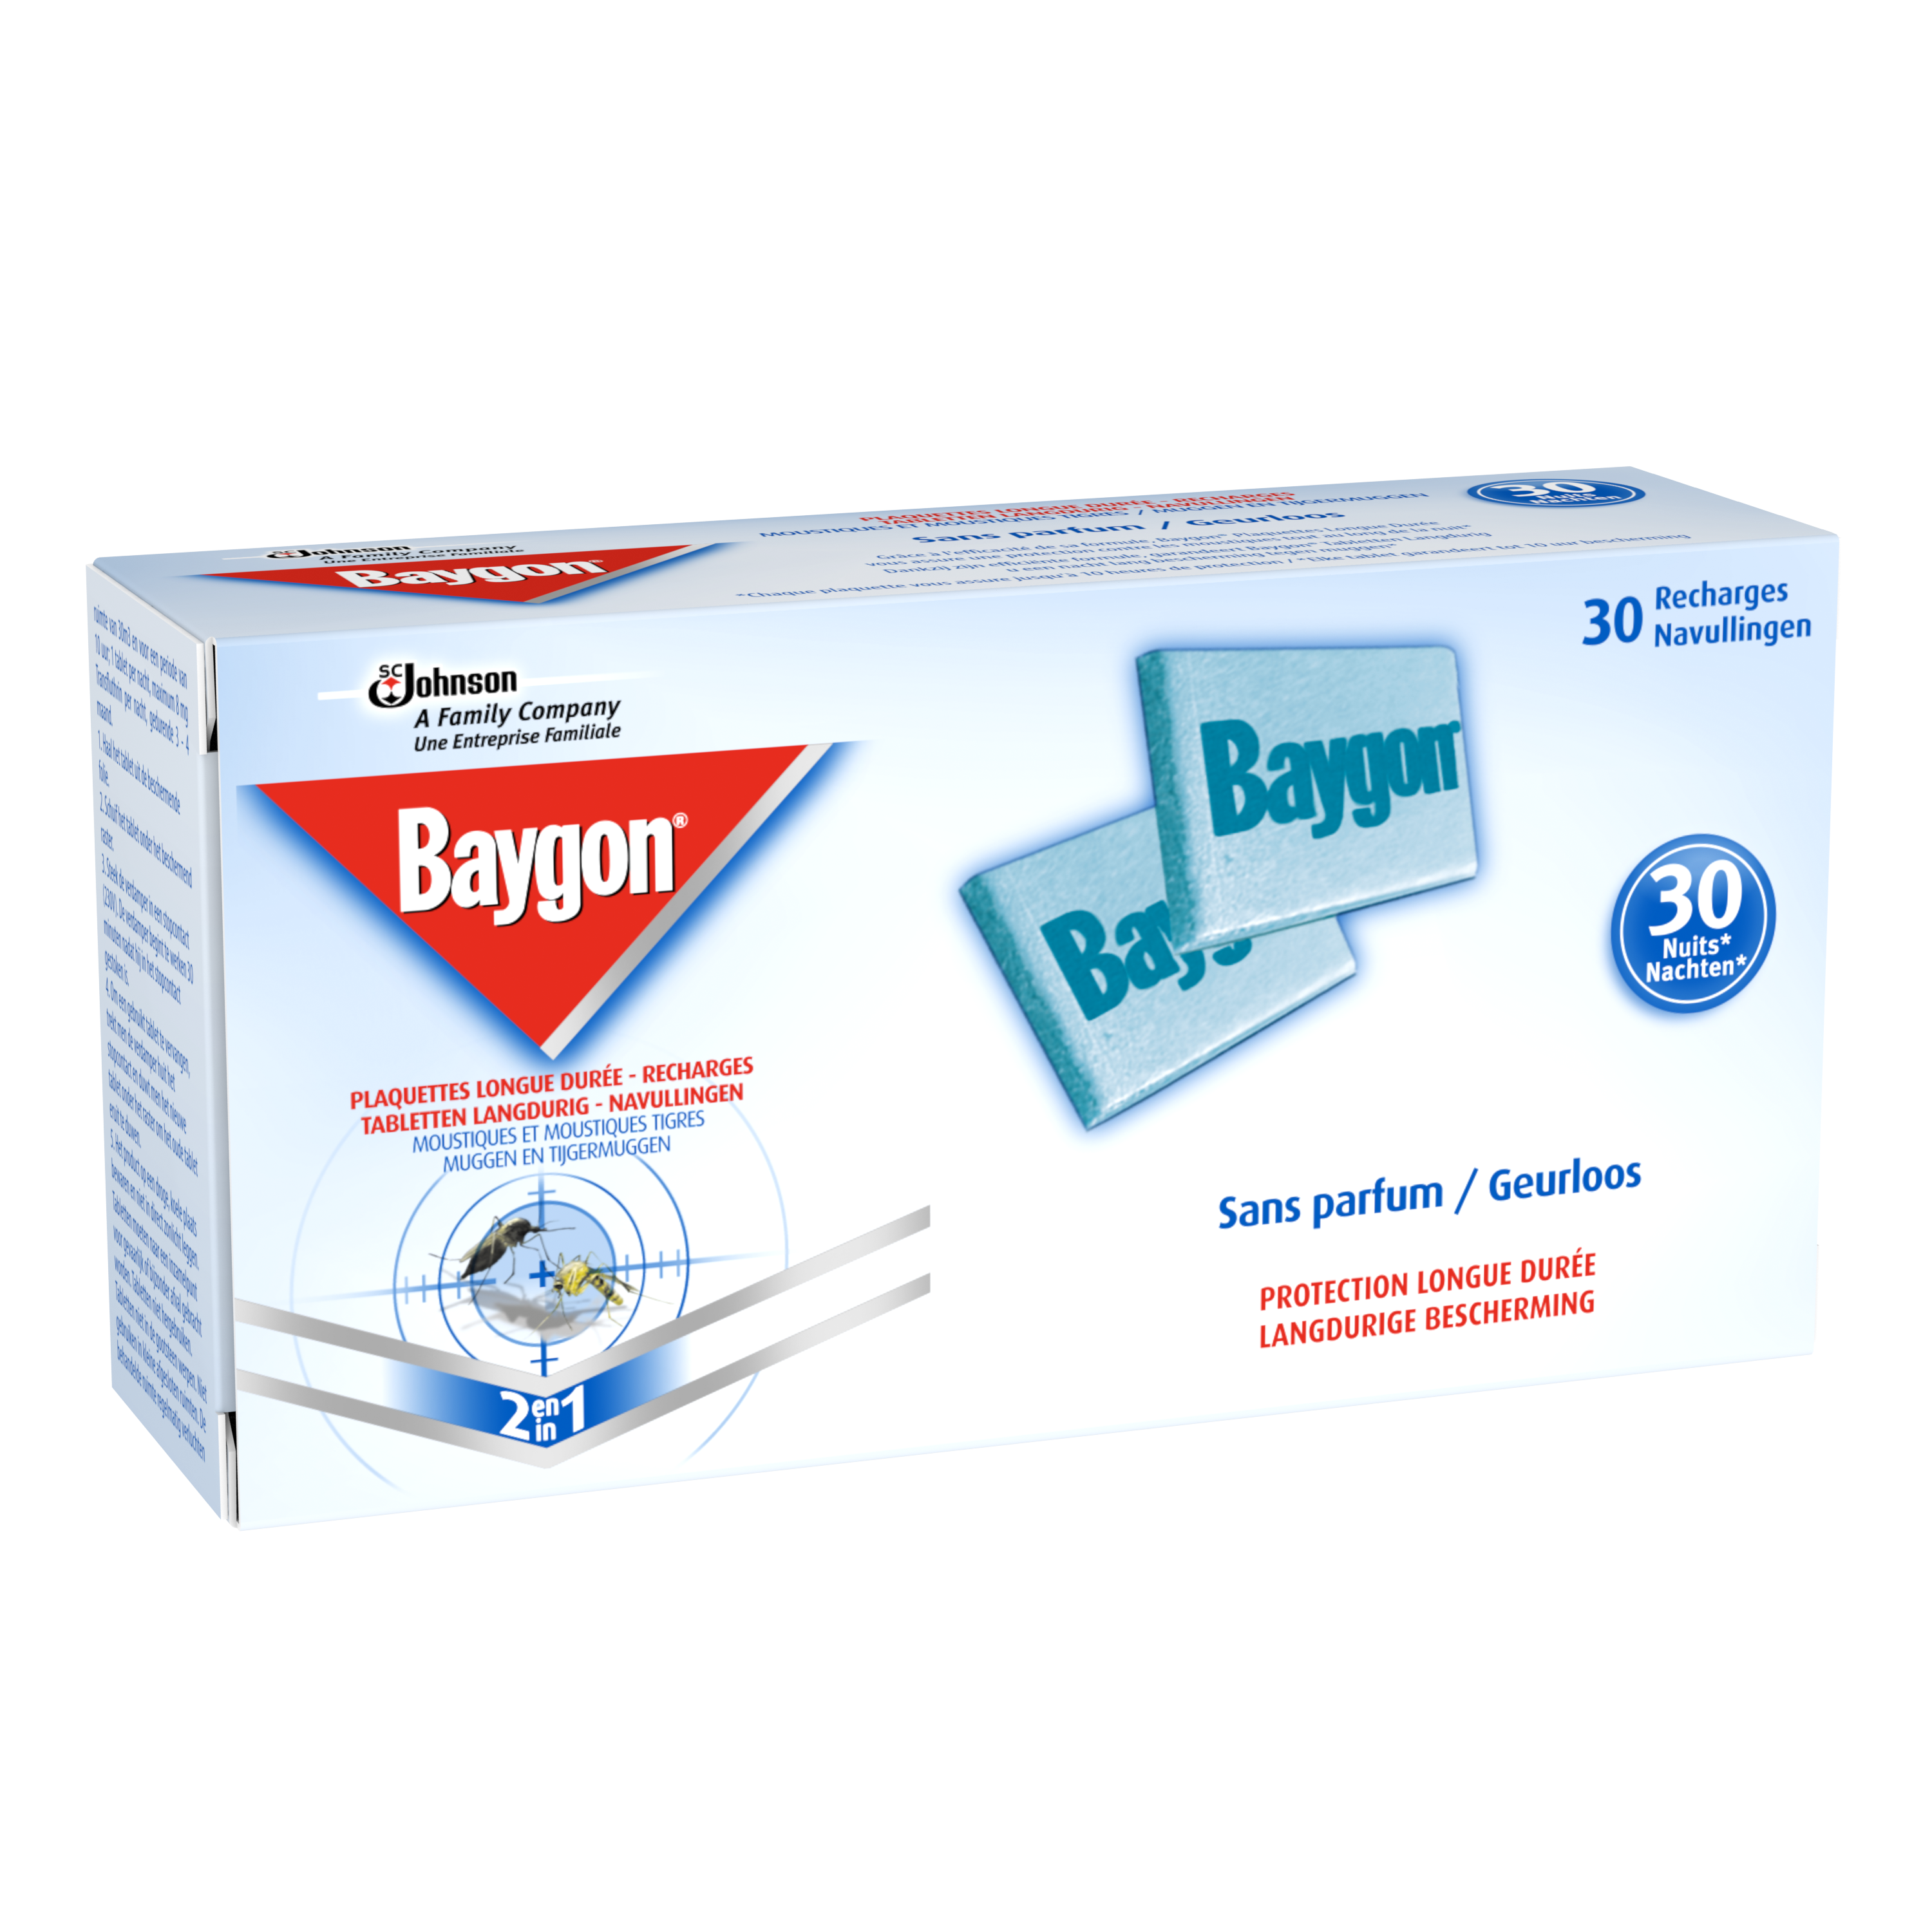 Baygon® Plaquettes Longue Durée - Recharges